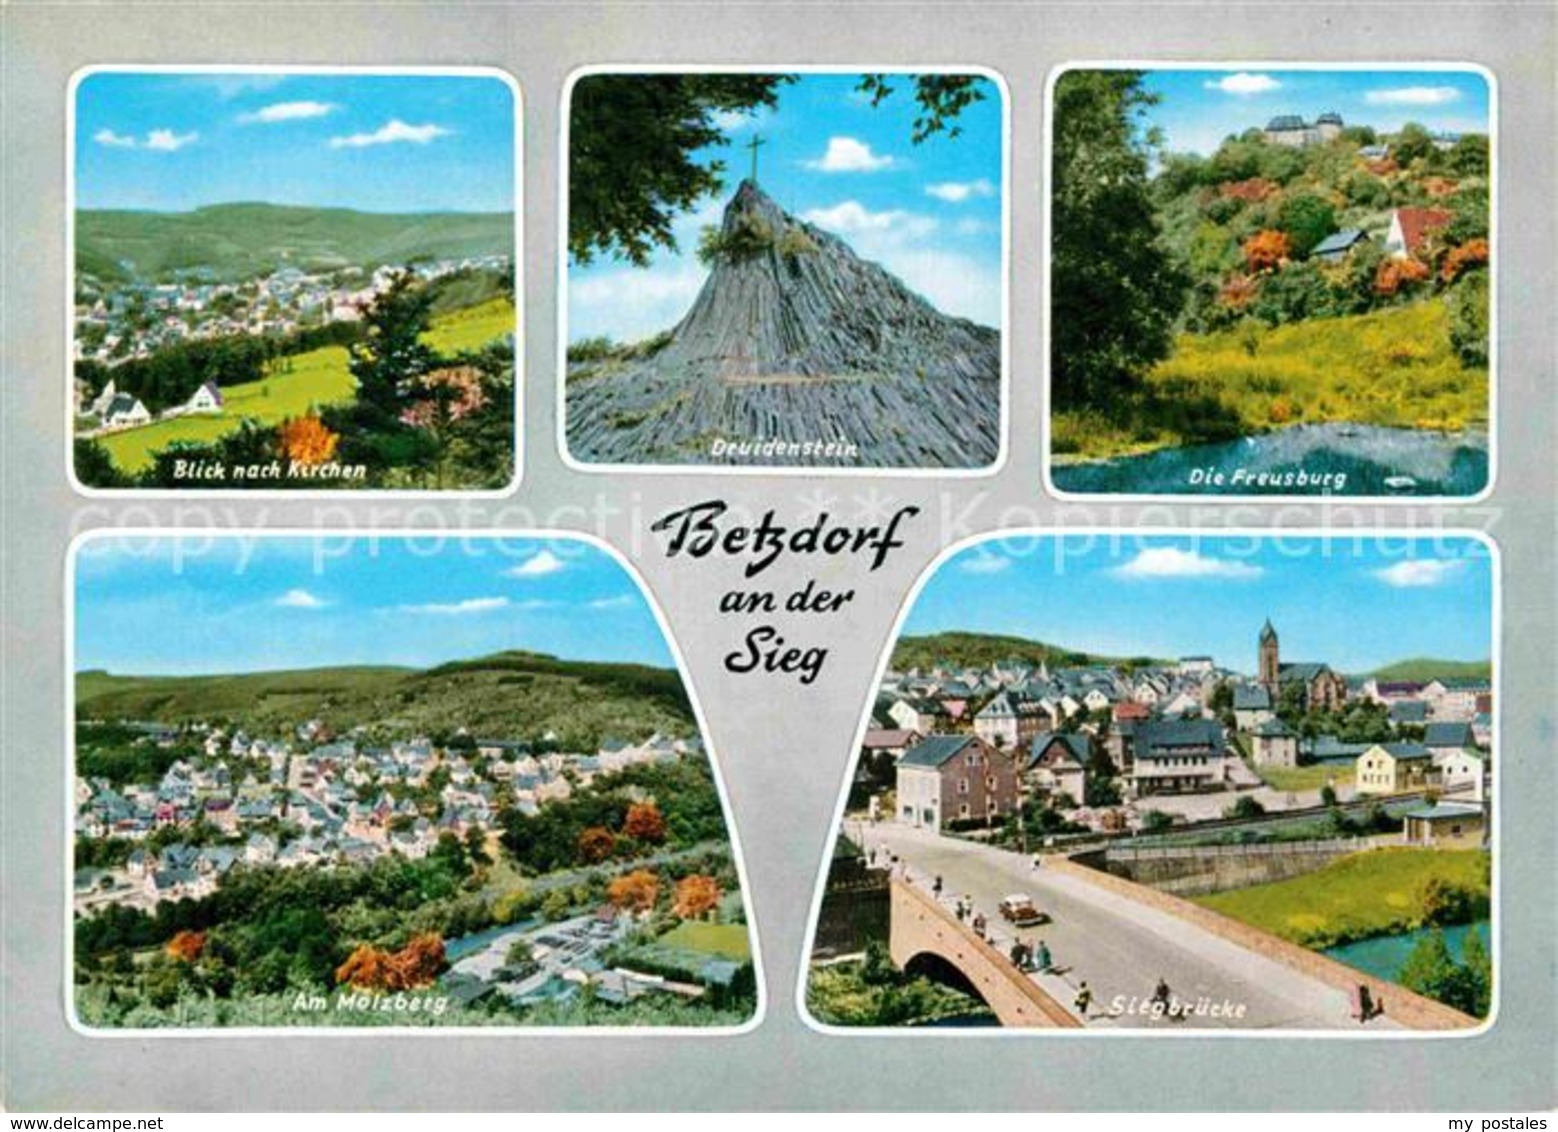 32855461 Betzdorf Sieg Siegbruecke Druidenstein Freusburg  Betzdorf - Betzdorf